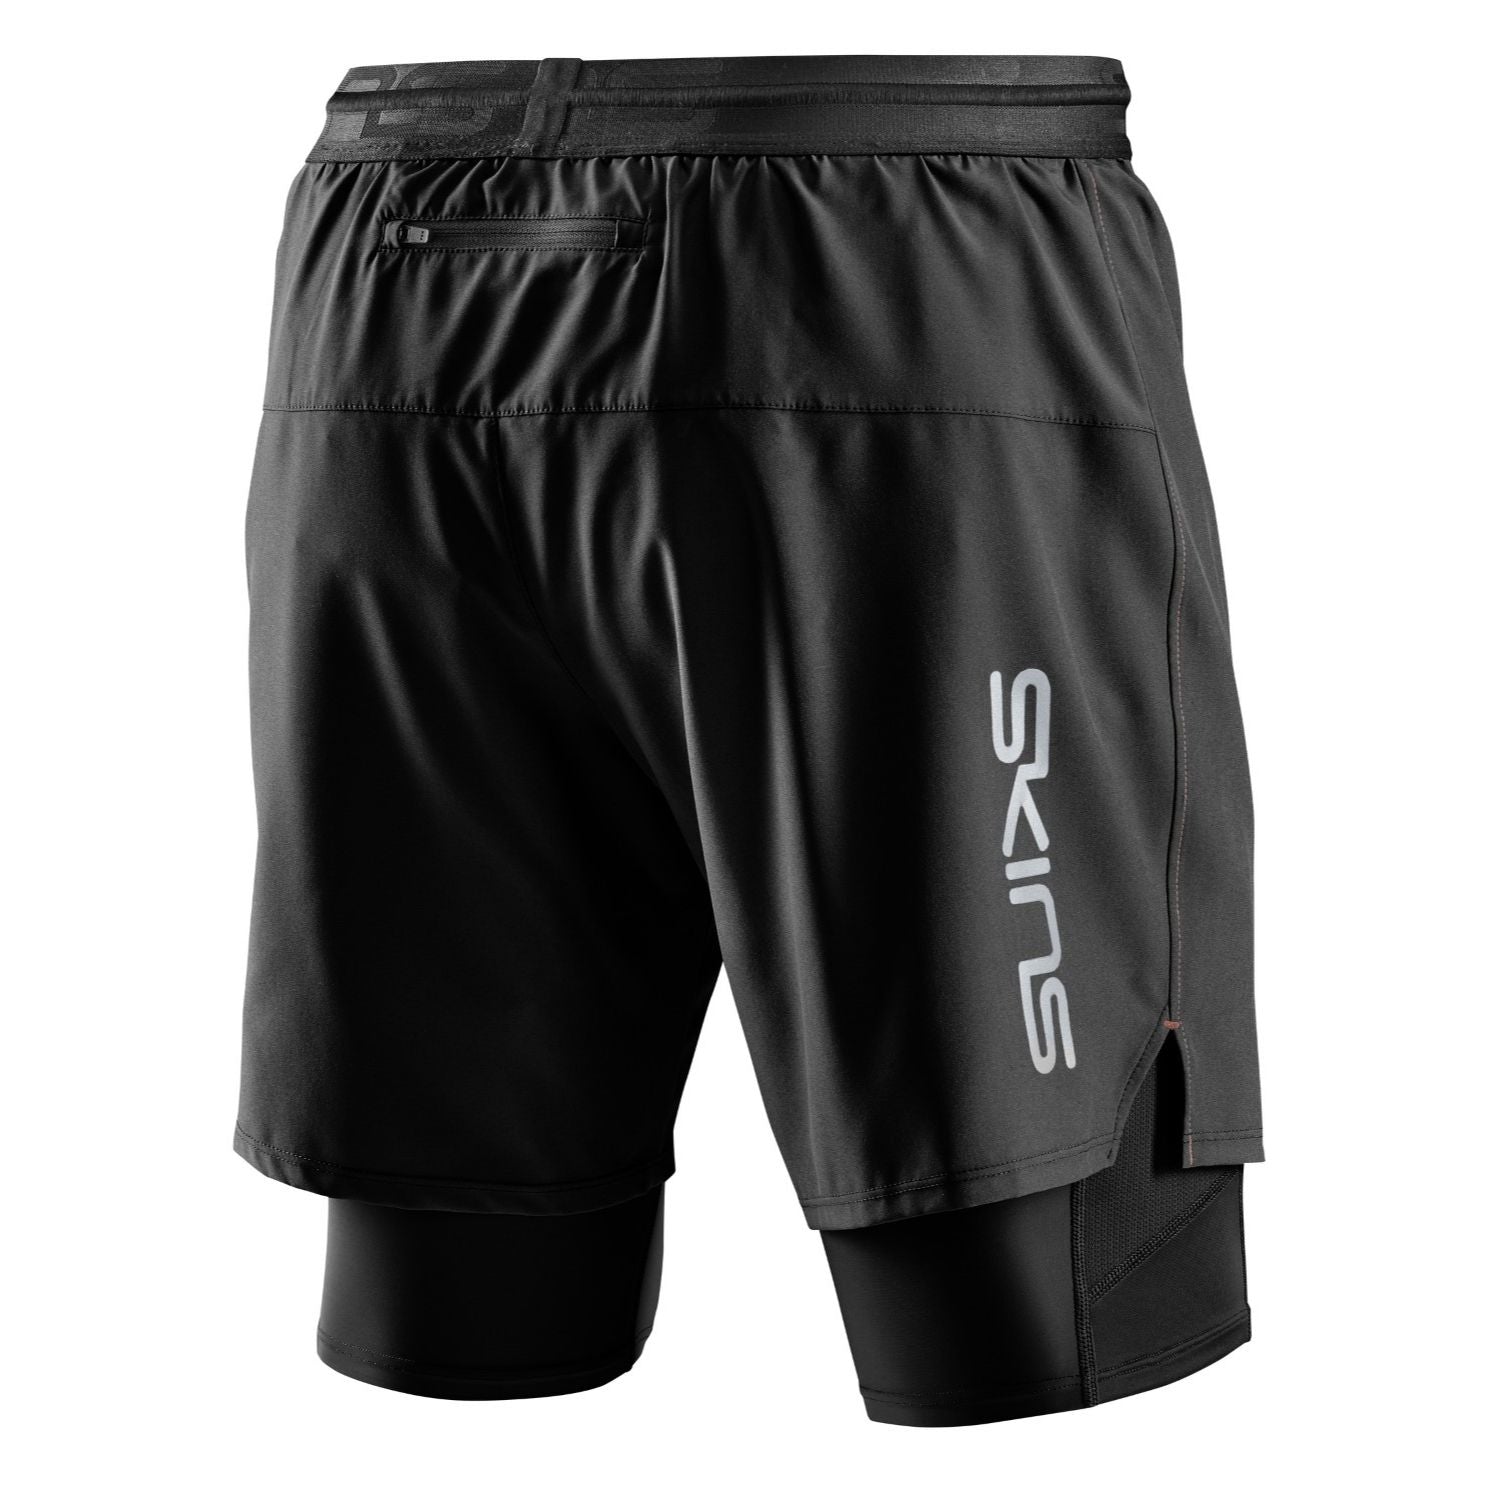 SKINS Men's Series-3 Superpose Shorts - Black